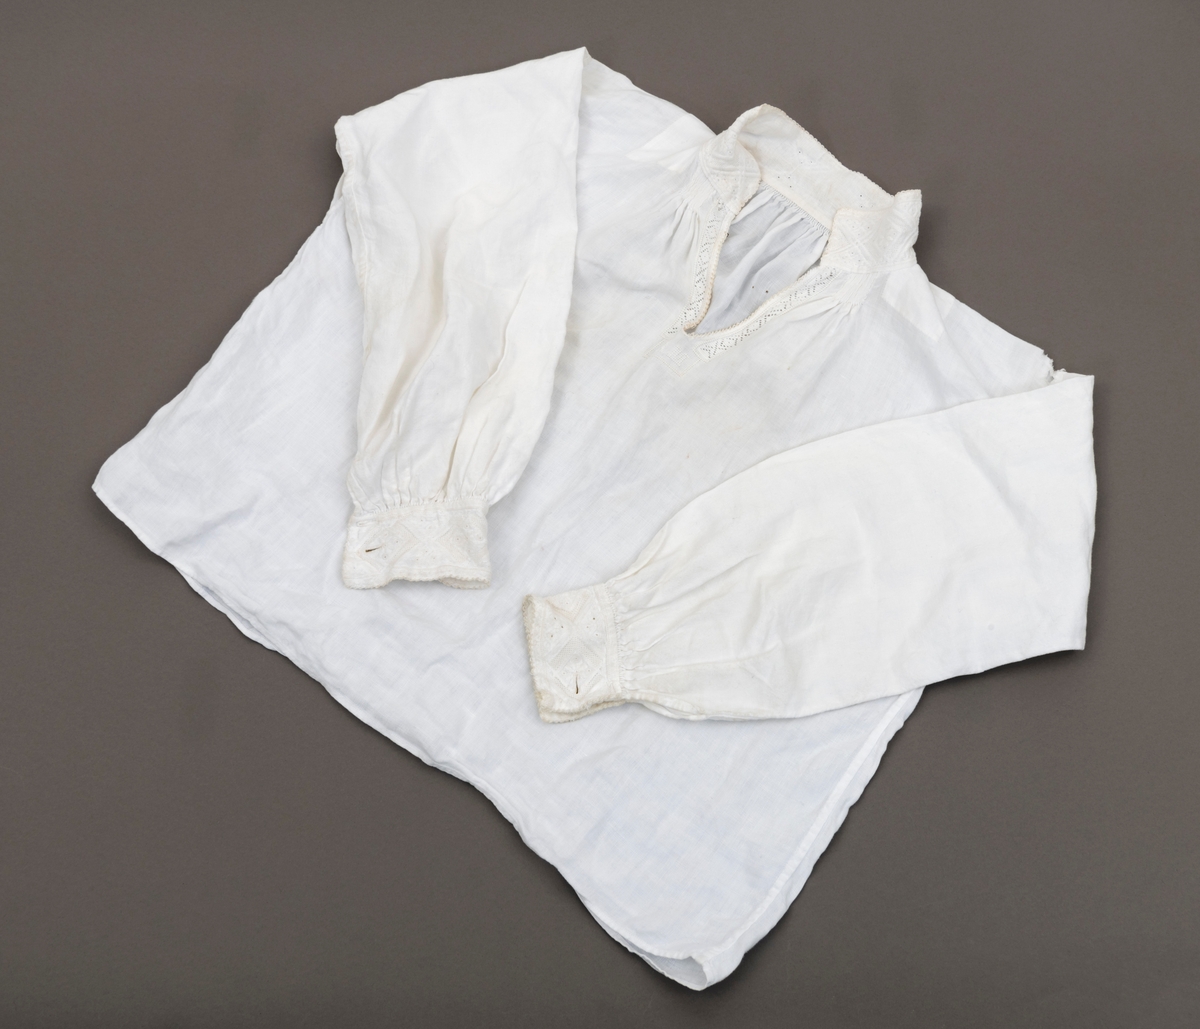 Bunadsskjorte med rik broderidekor i halslinning og ermlinning. Skade (slitasjehull) på venstre skulder.